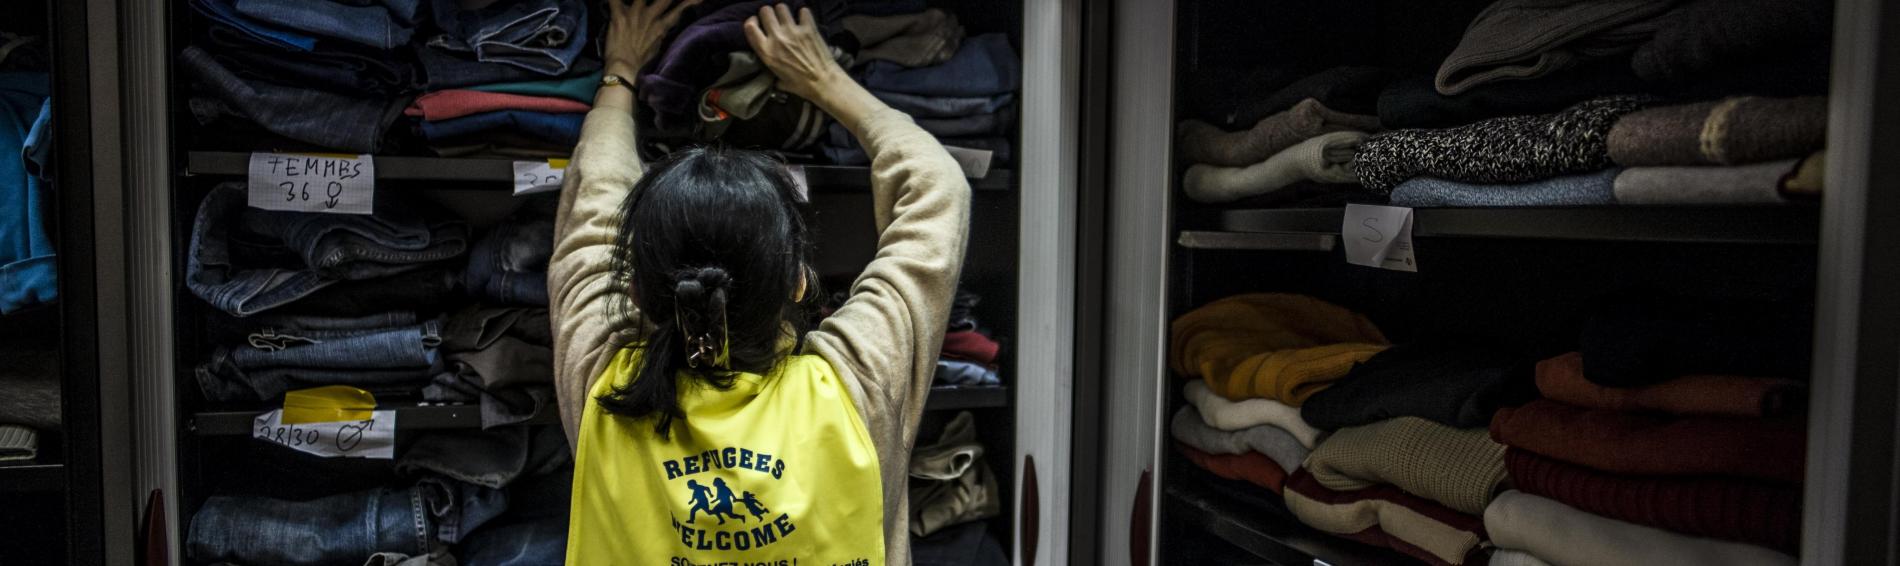 Een vrijwilligster met een geel jasje waarop 'refugees welcome' gemarkeerd staat, houdt zich bezig met het sorteren van te doneren kledij in het magazijn van de humanitaire hub. De kast puilt uit van de kleurrijke wintertruien, warme broeken en jassen die per maat zijn uitgestald.